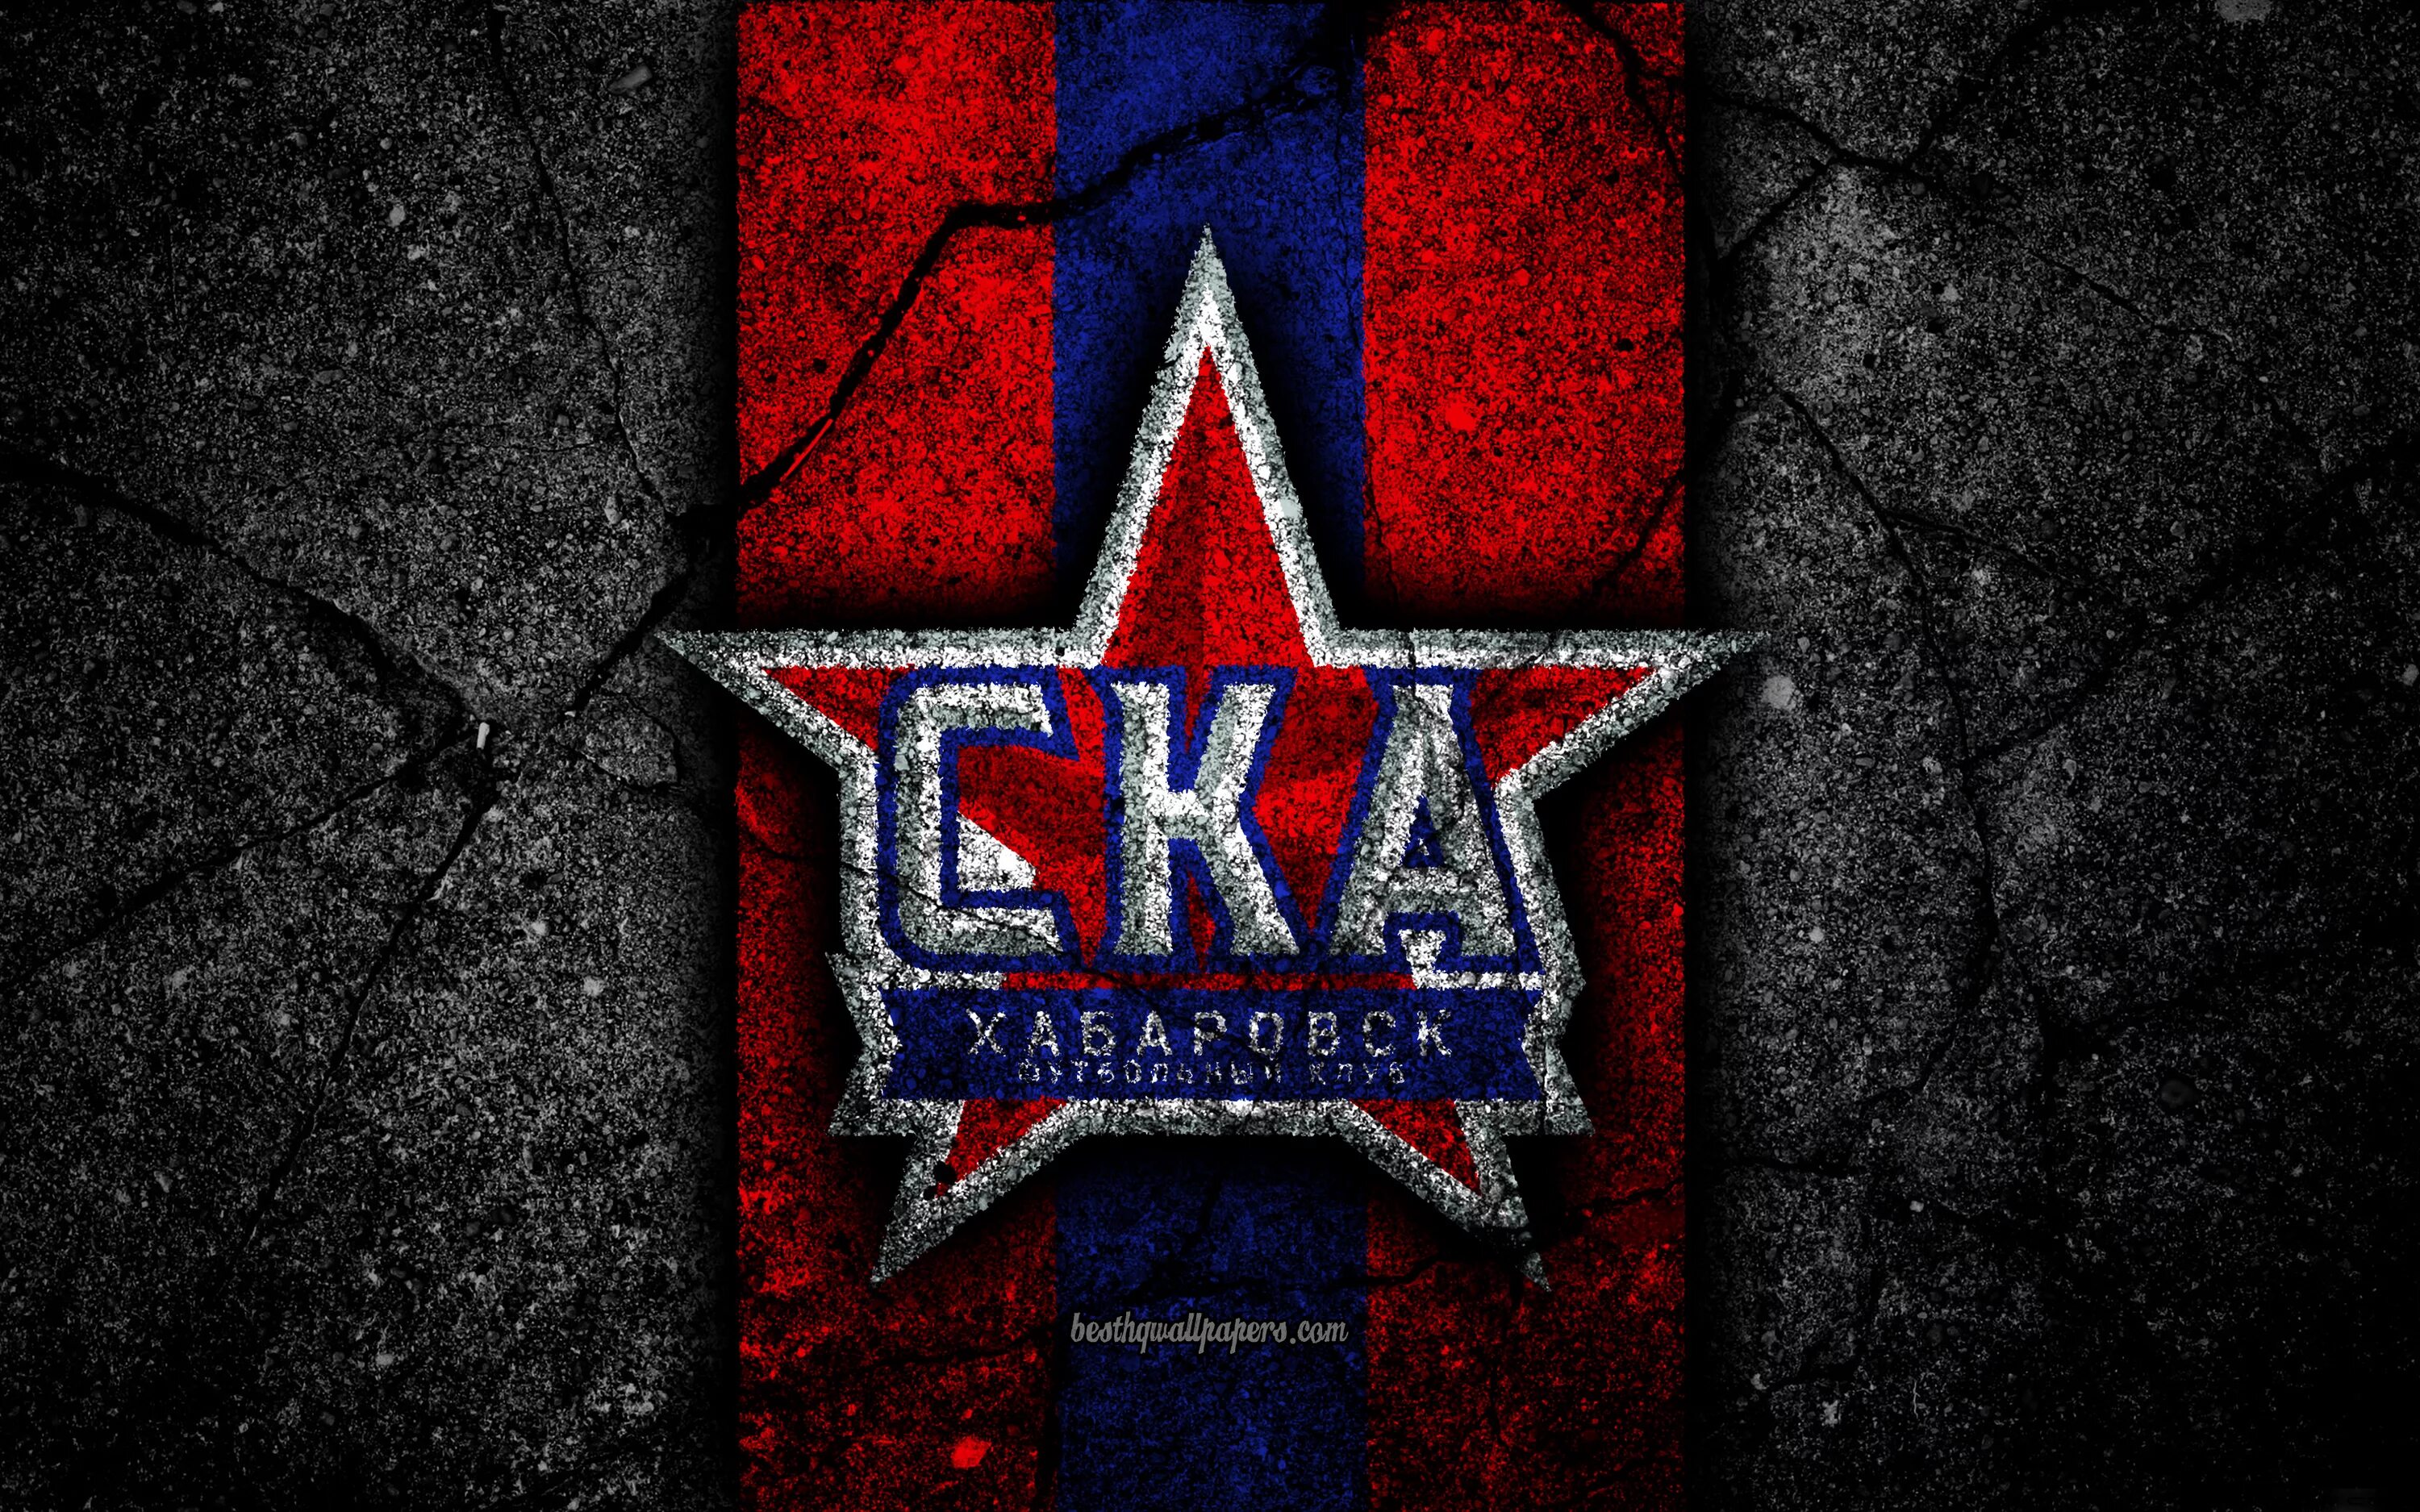 Ска обои. Хоккейный клуб СКА лого. Хоккейныйклюб СКА лого. Заставка хк СКА. СКА Хабаровск логотип.